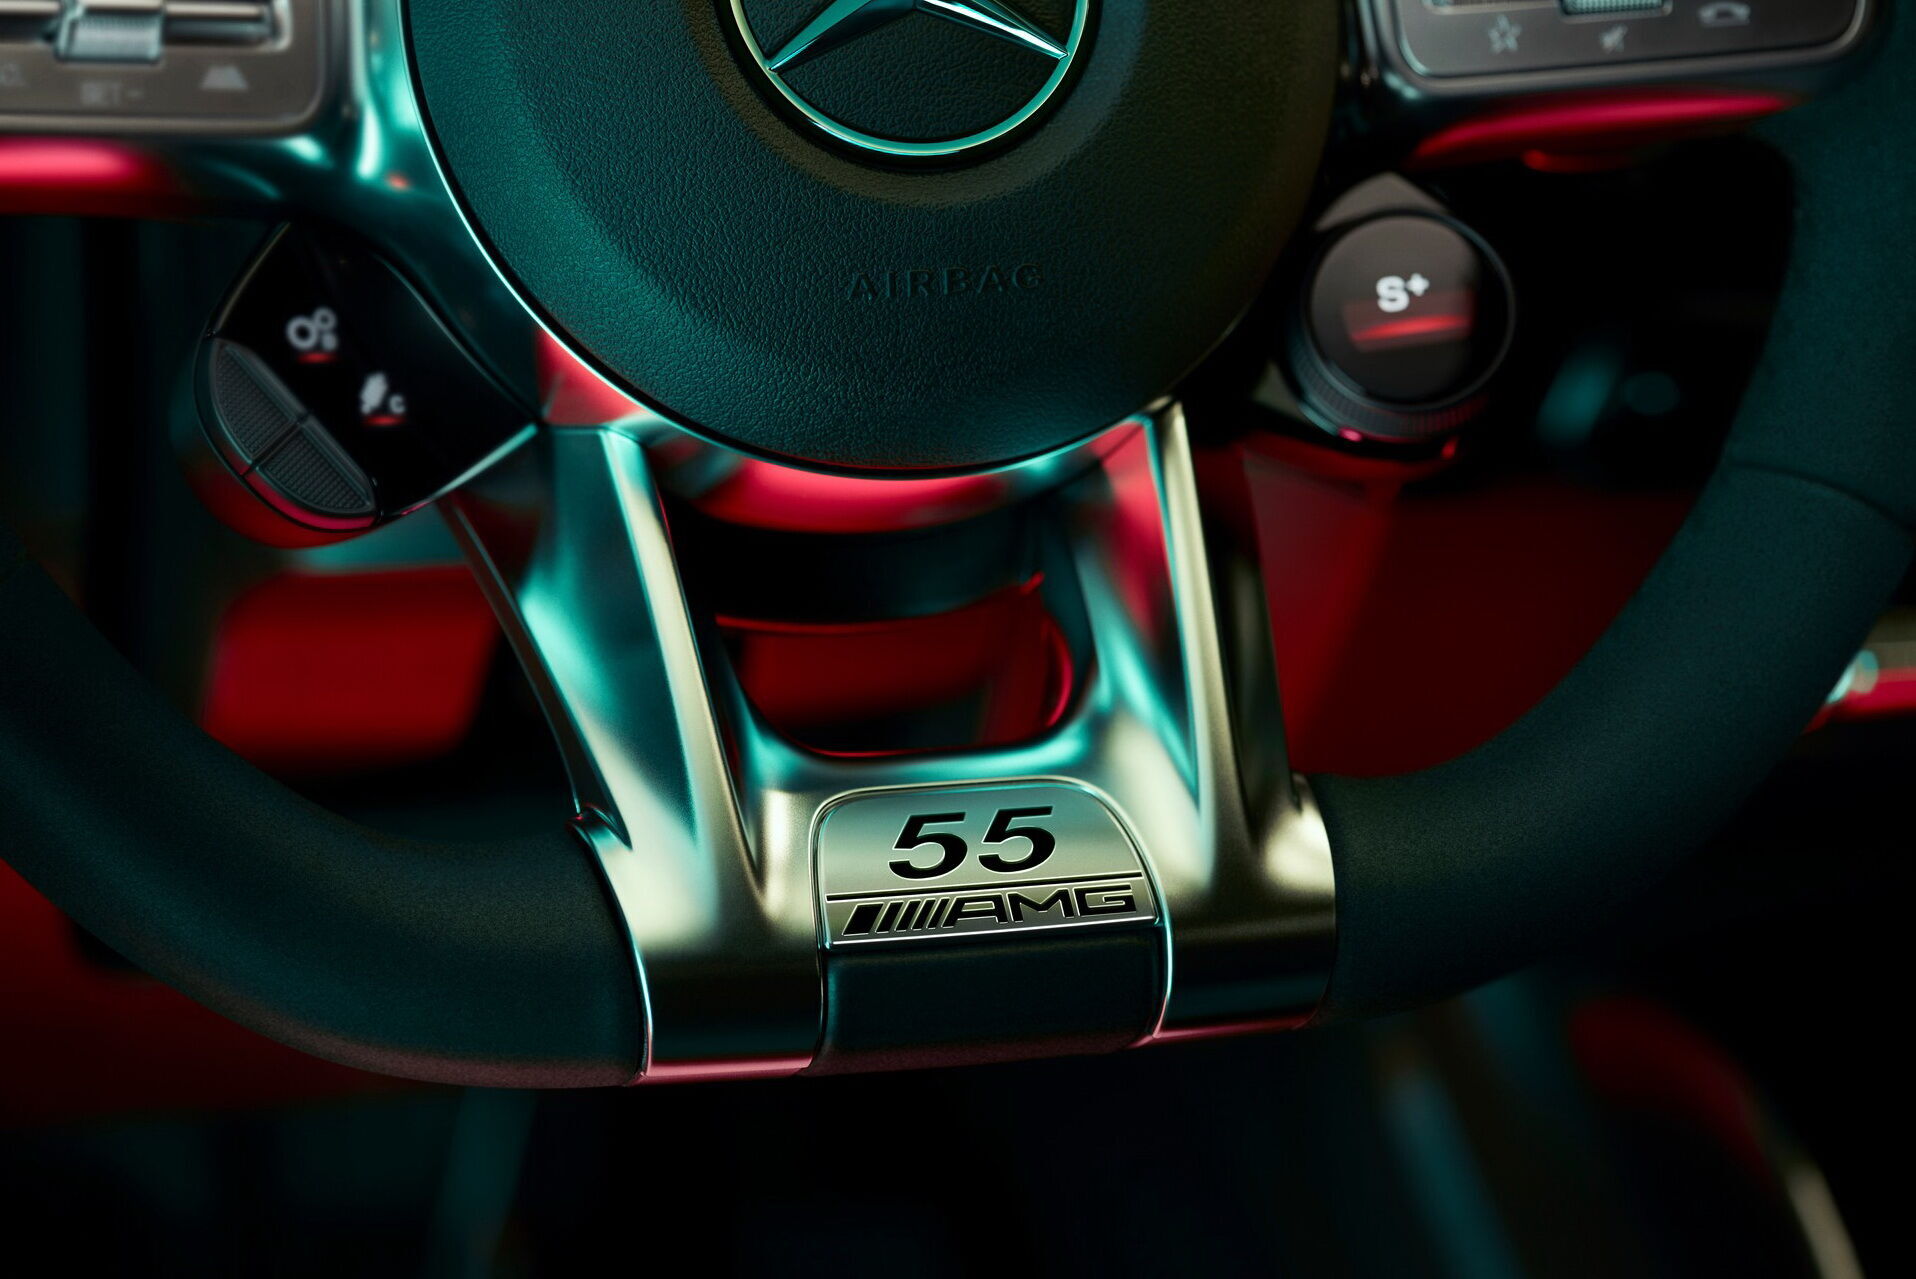 Оздоблене мікрофіброю кермо AMG Performance прикрашає емблема "Edition 55"